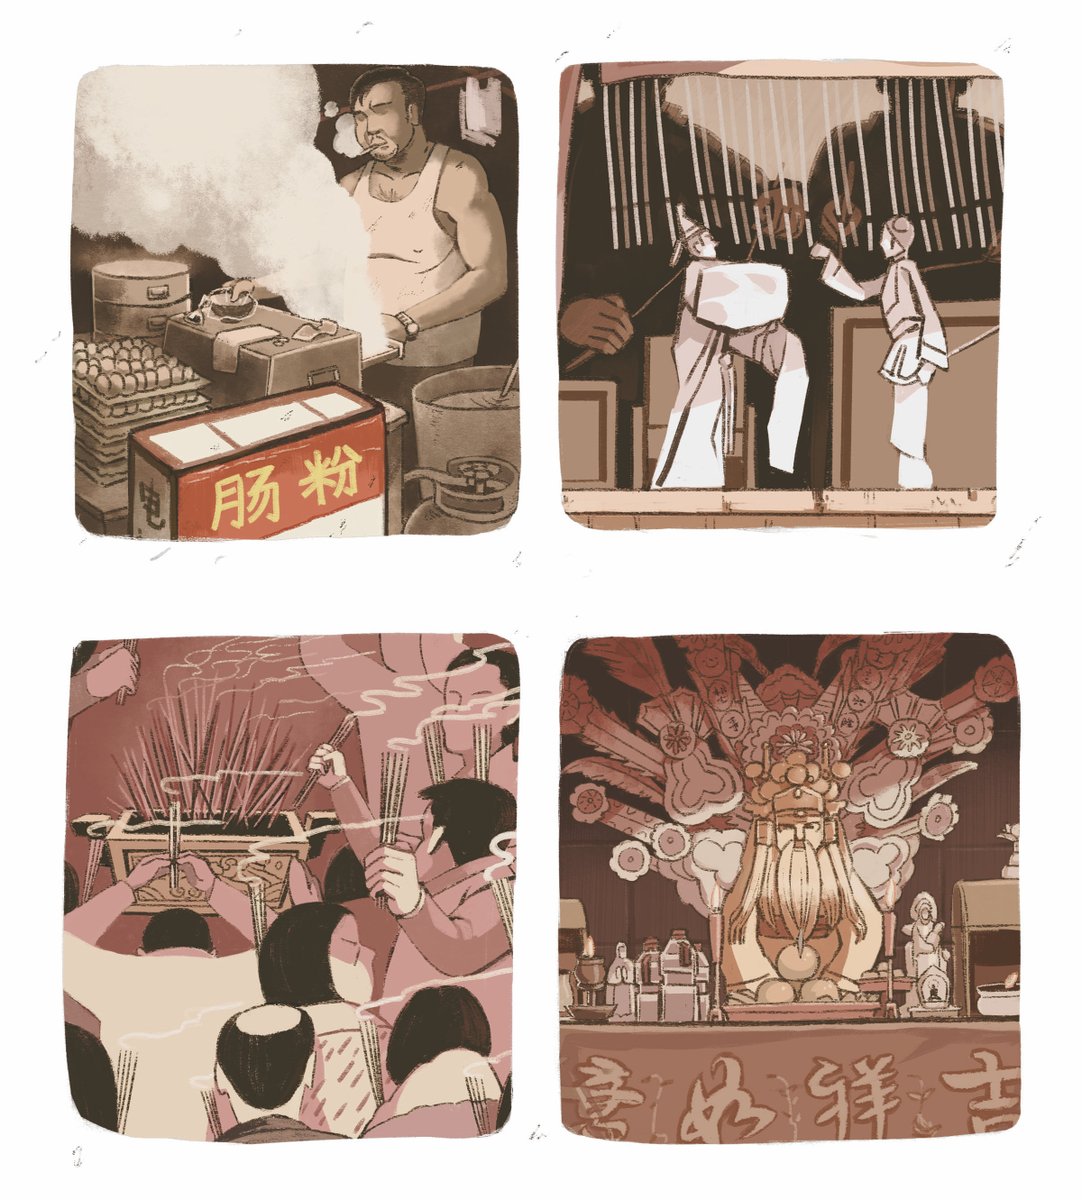 新しい中国漫画の紹介です!!
『故郷にて』(作者:夜猫)1/6
子どもの頃の思い出がたくさん残る故郷に帰省したイラストレーターのお話。すっかり様変わりし、豊かになった故郷で彼が体験することとは……?
#漫画が読めるハッシュタグ #中国漫画 